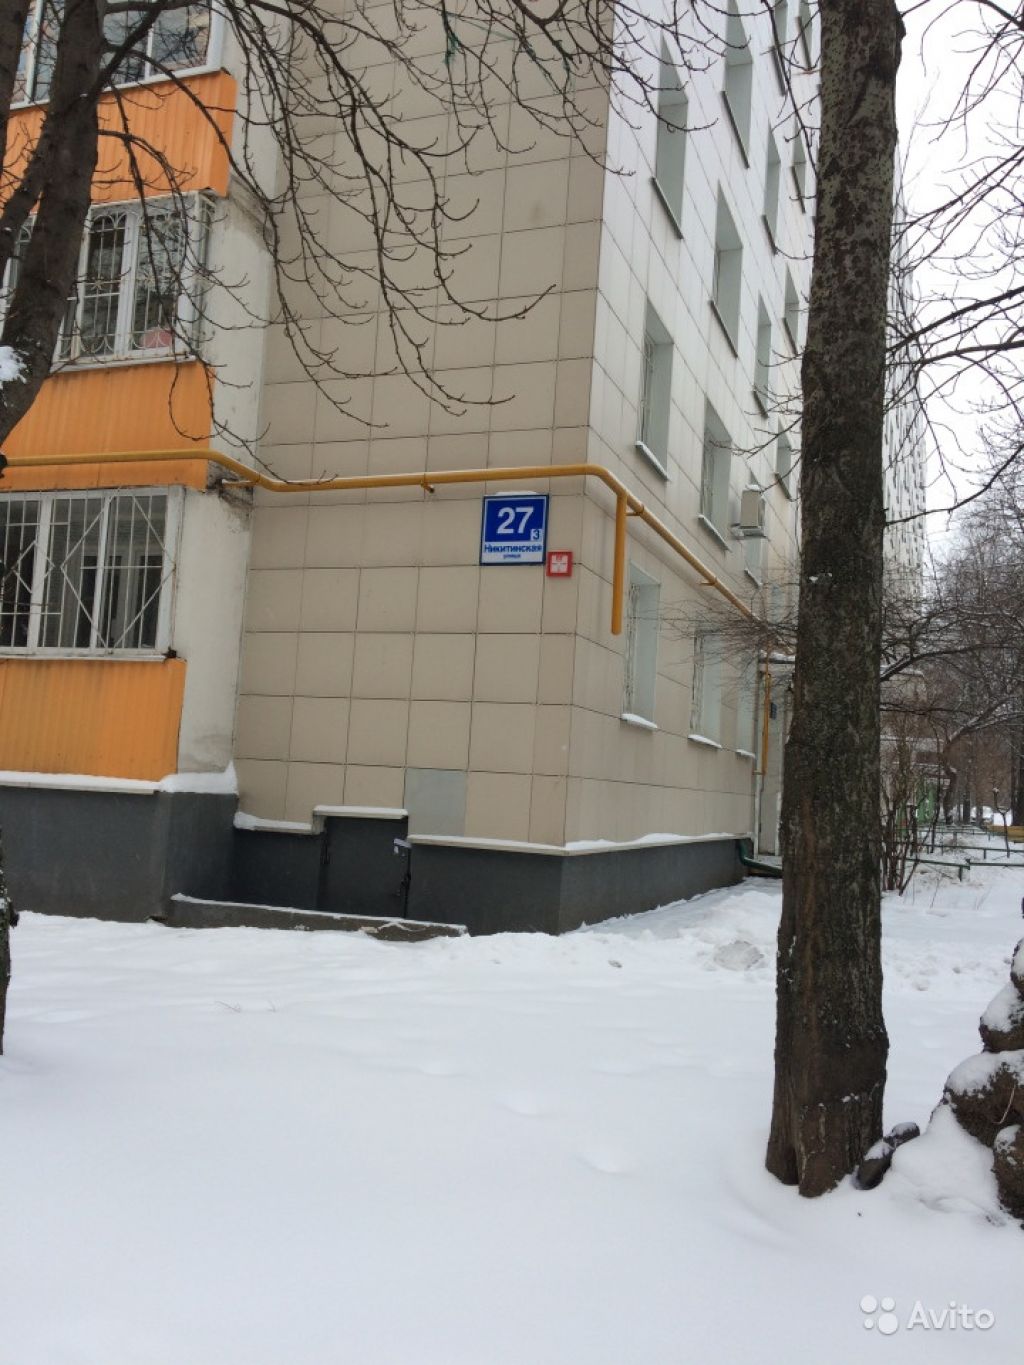 Продам квартиру 3-к квартира 50 м² на 1 этаже 9-этажного панельного дома в Москве. Фото 1